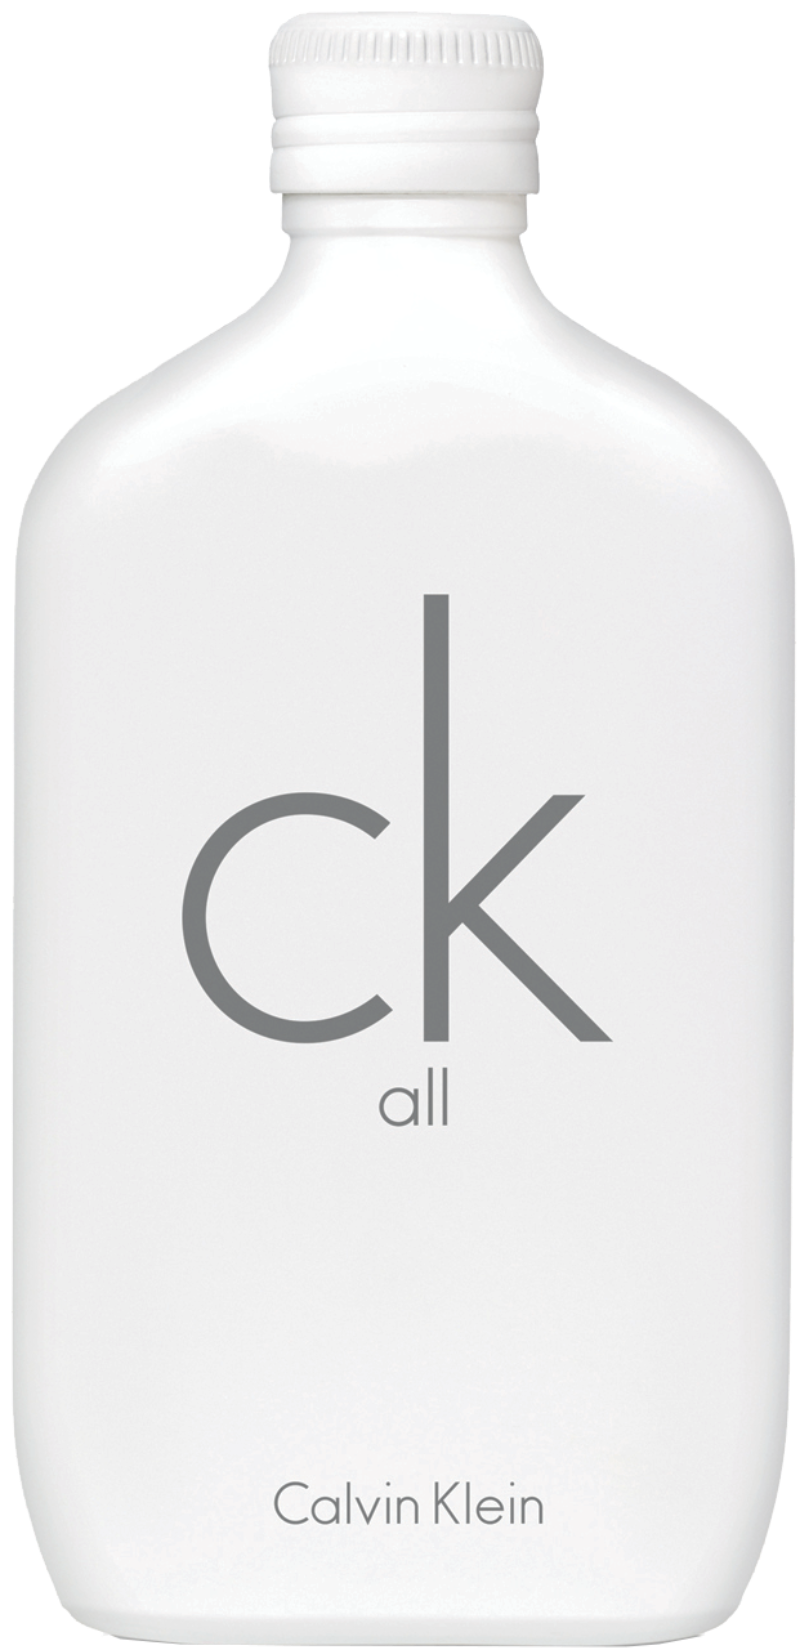 Calvin Klein - CK One All EdT 100 ml